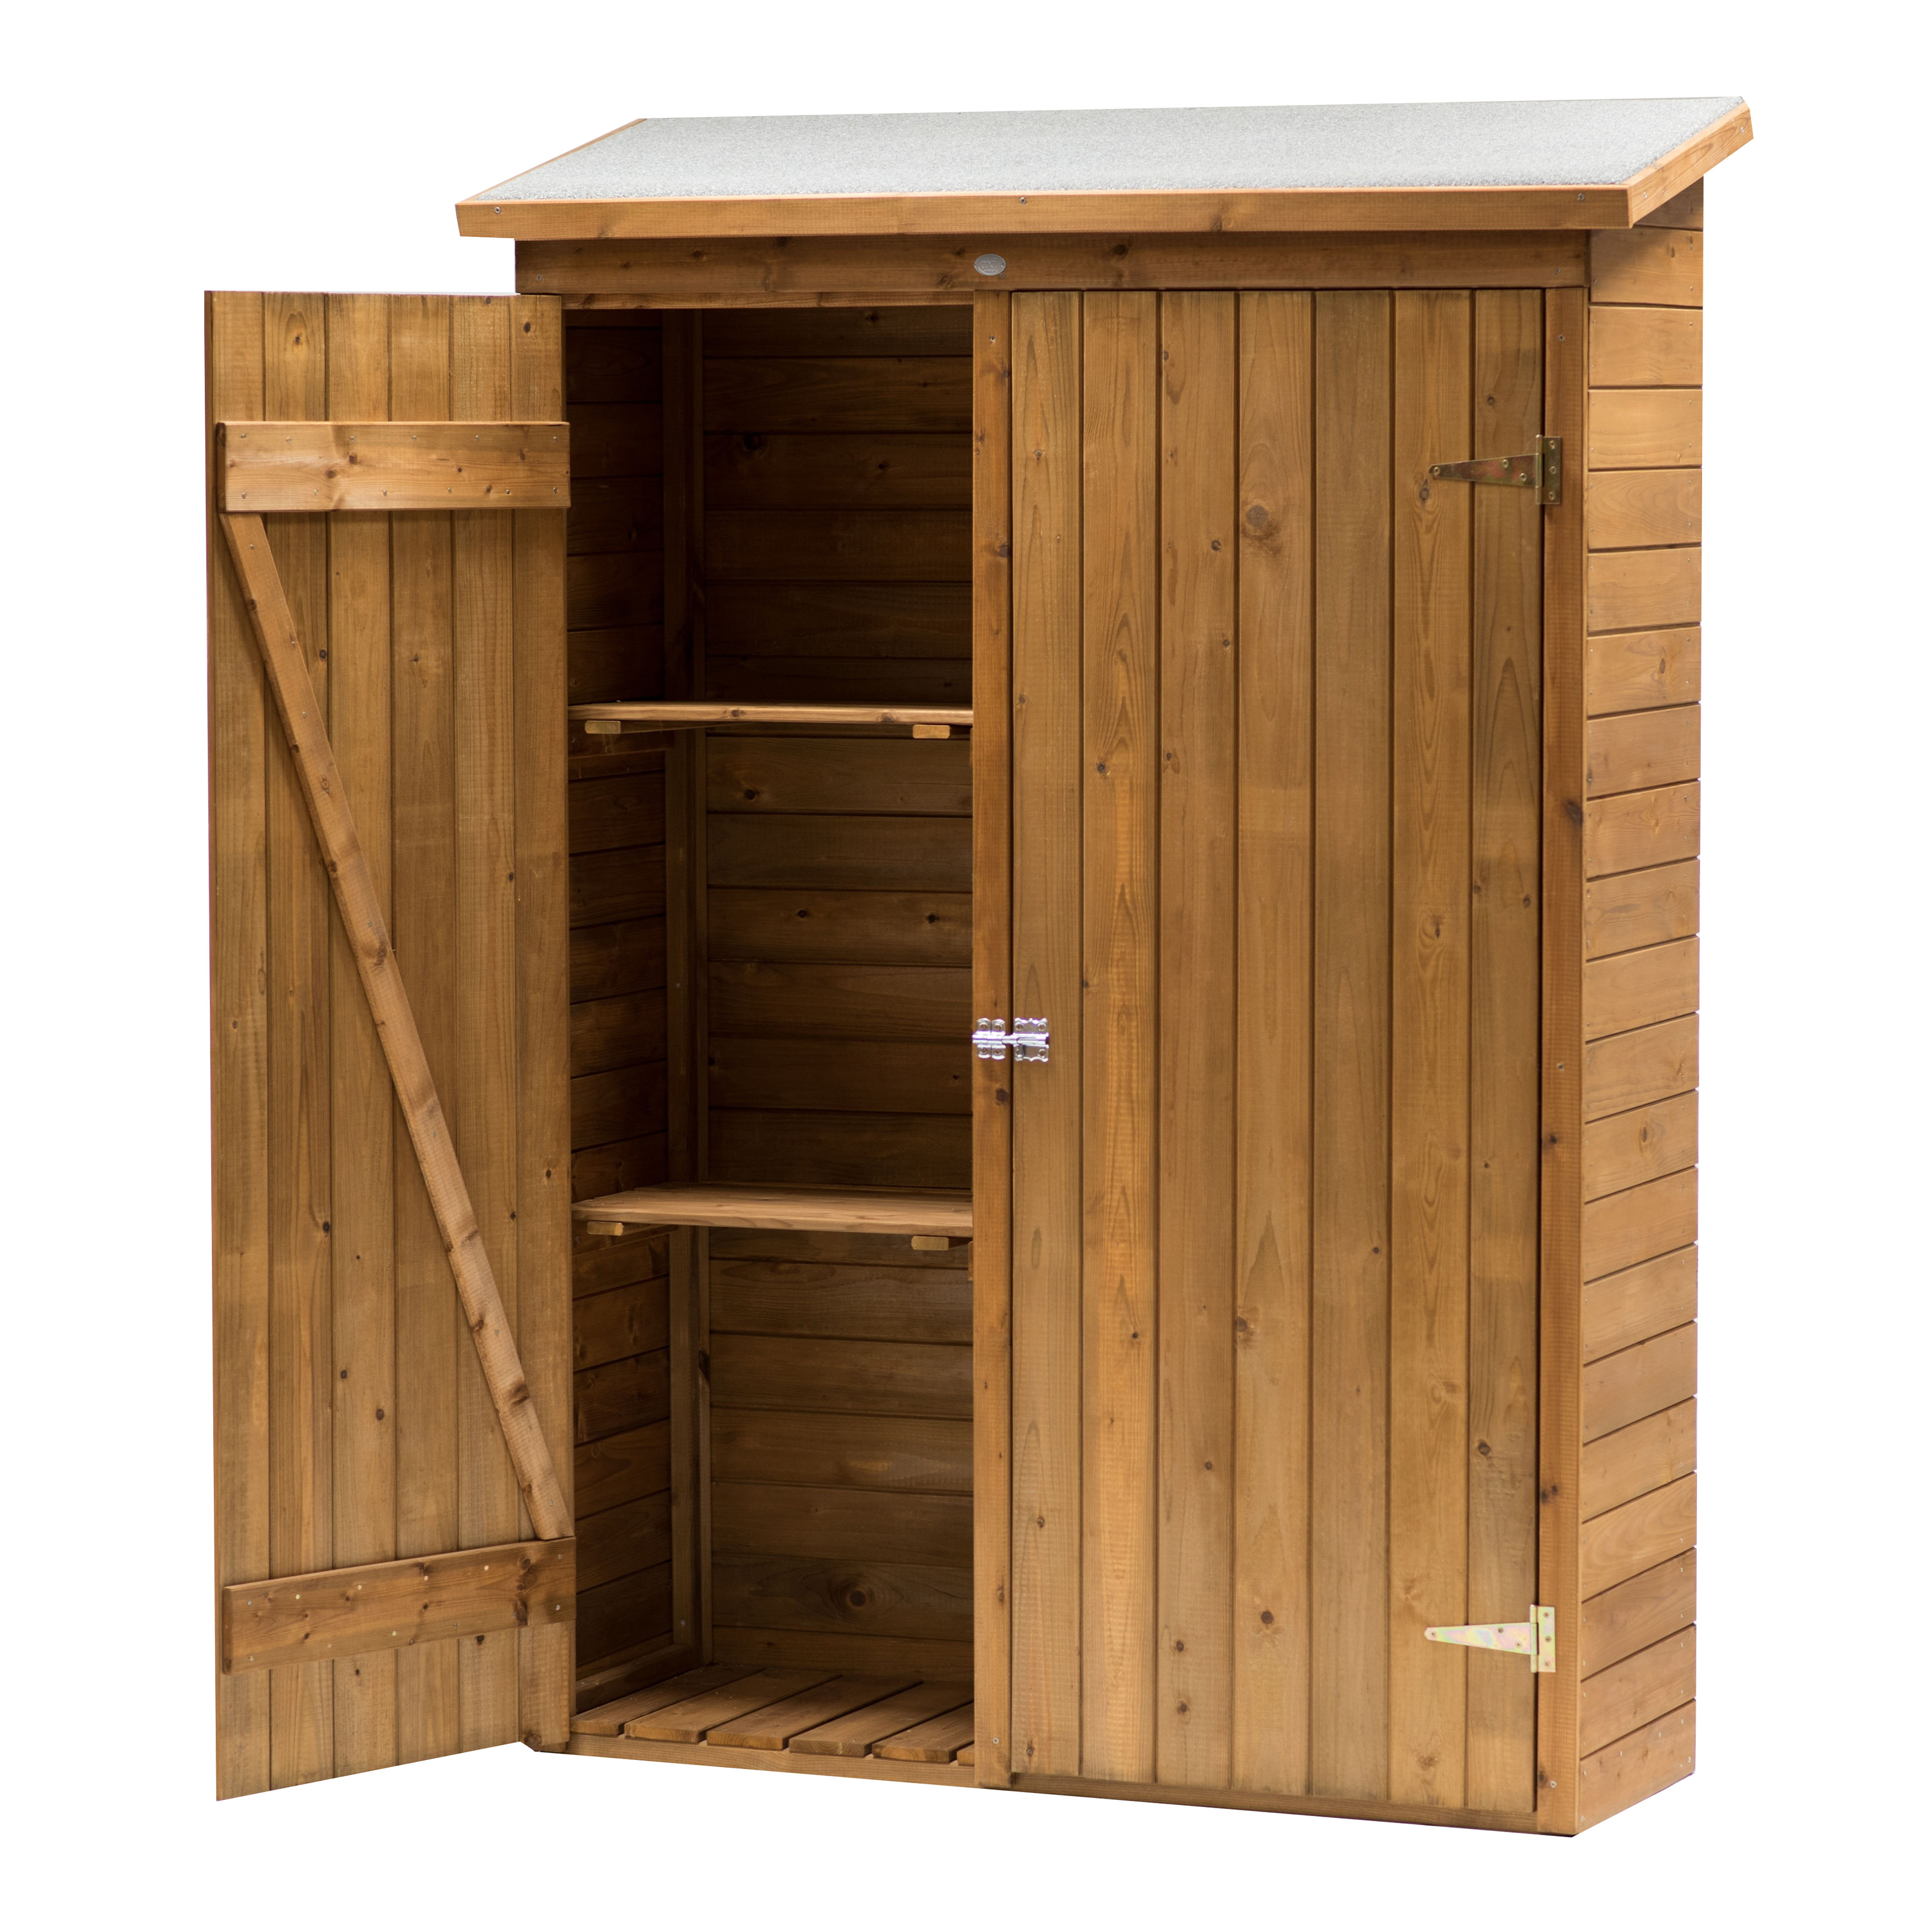 Olivier Wooden Garden Storage Cabinet 131 x 180 cm - Brown